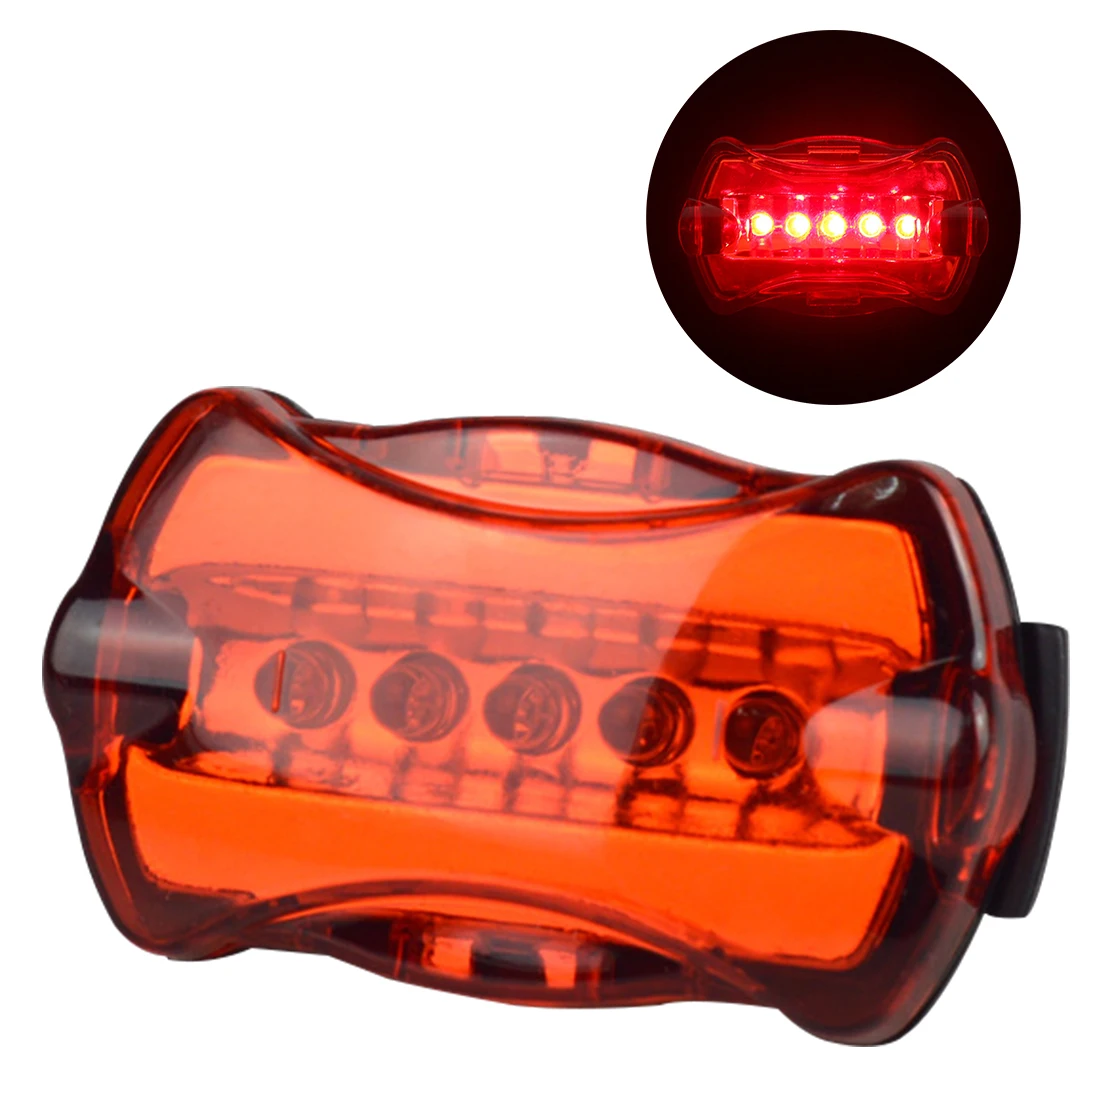 Pro Ультра яркий 5 светодиодный велосипед задняя лампа светильник вспышки светильник s лампа велосипедный предупреждающий световой сигнал аксессуары